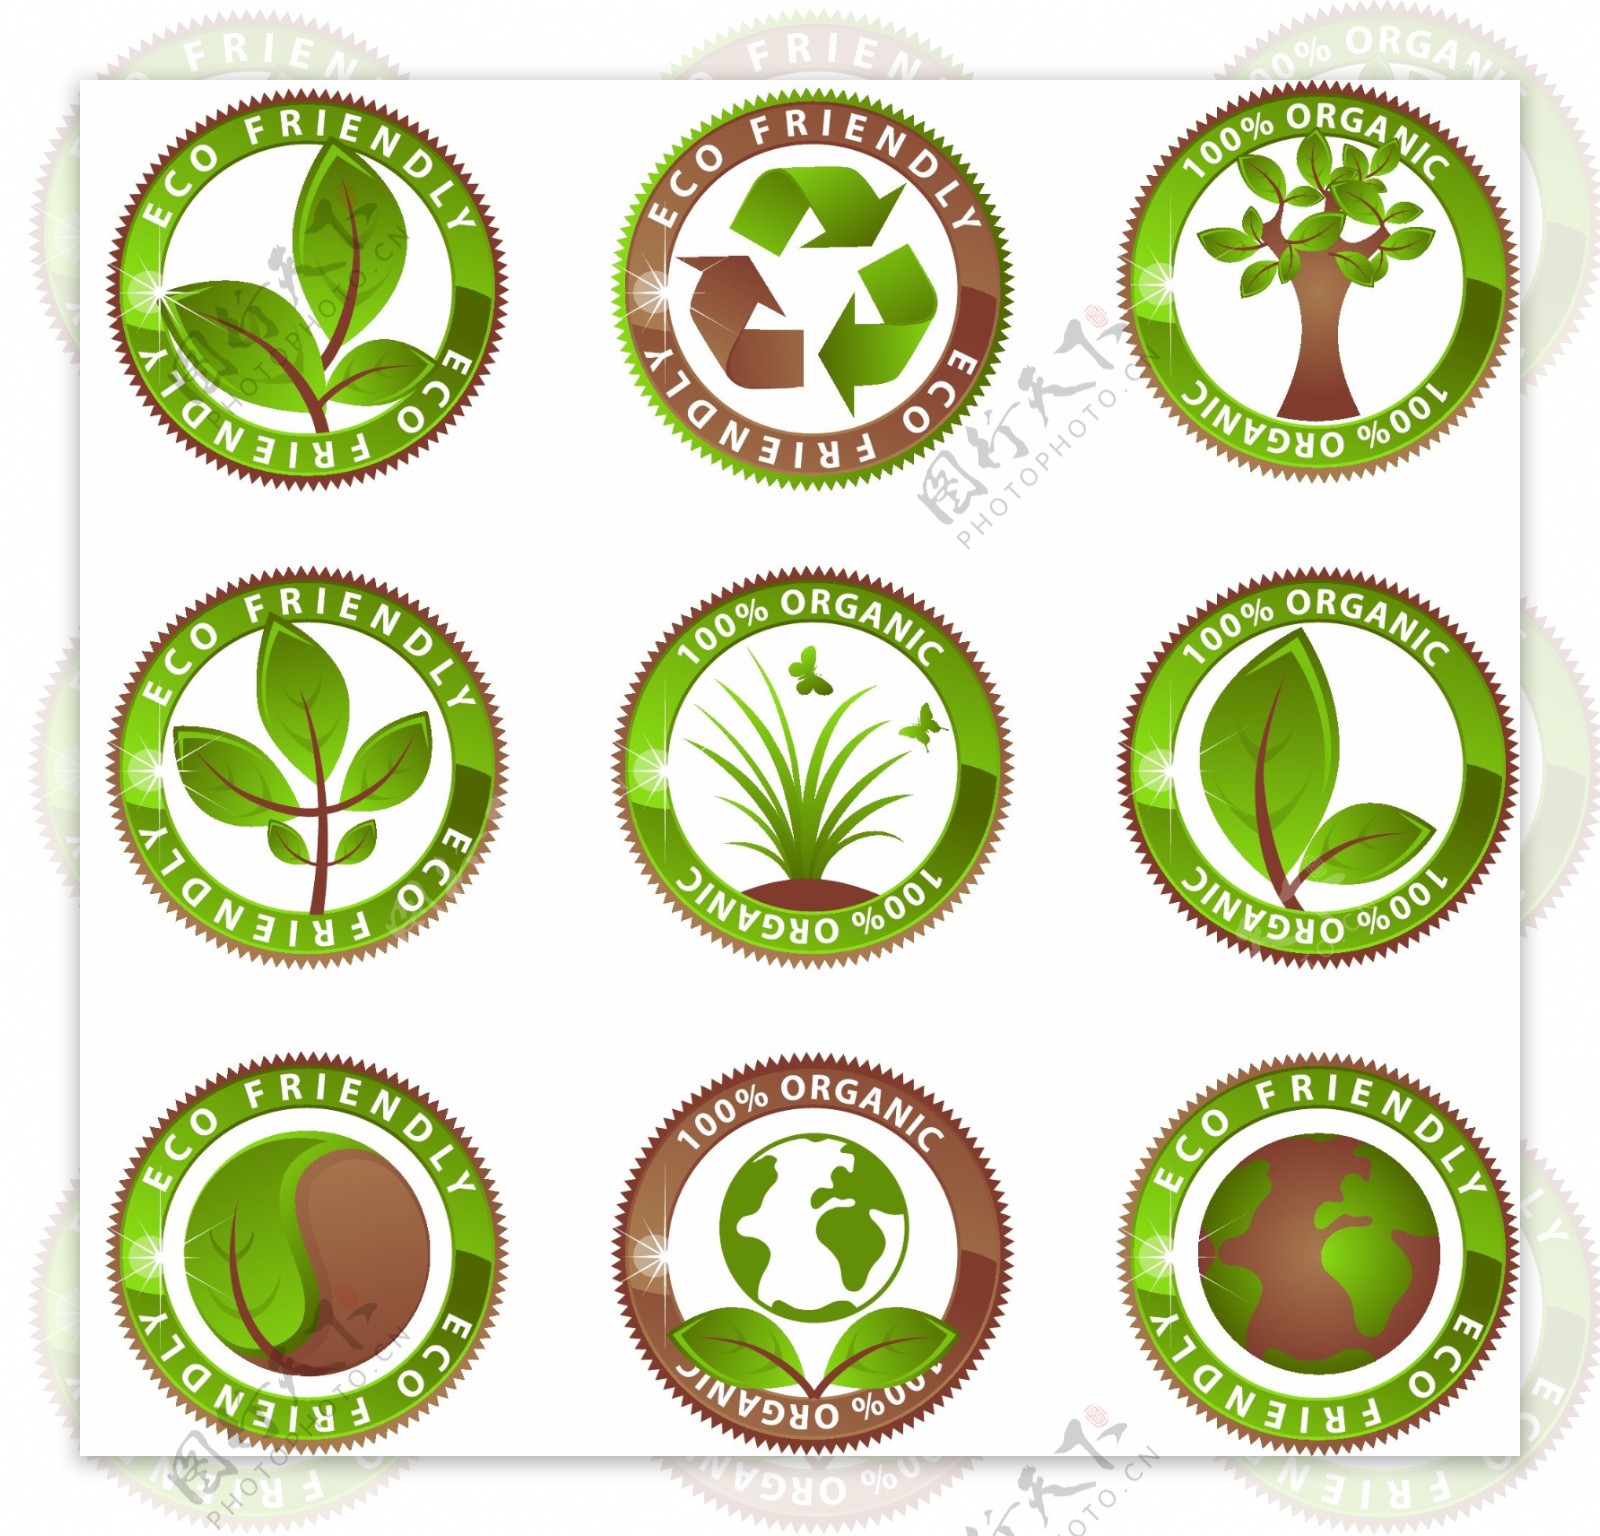 绿色创意环保图标矢量素材